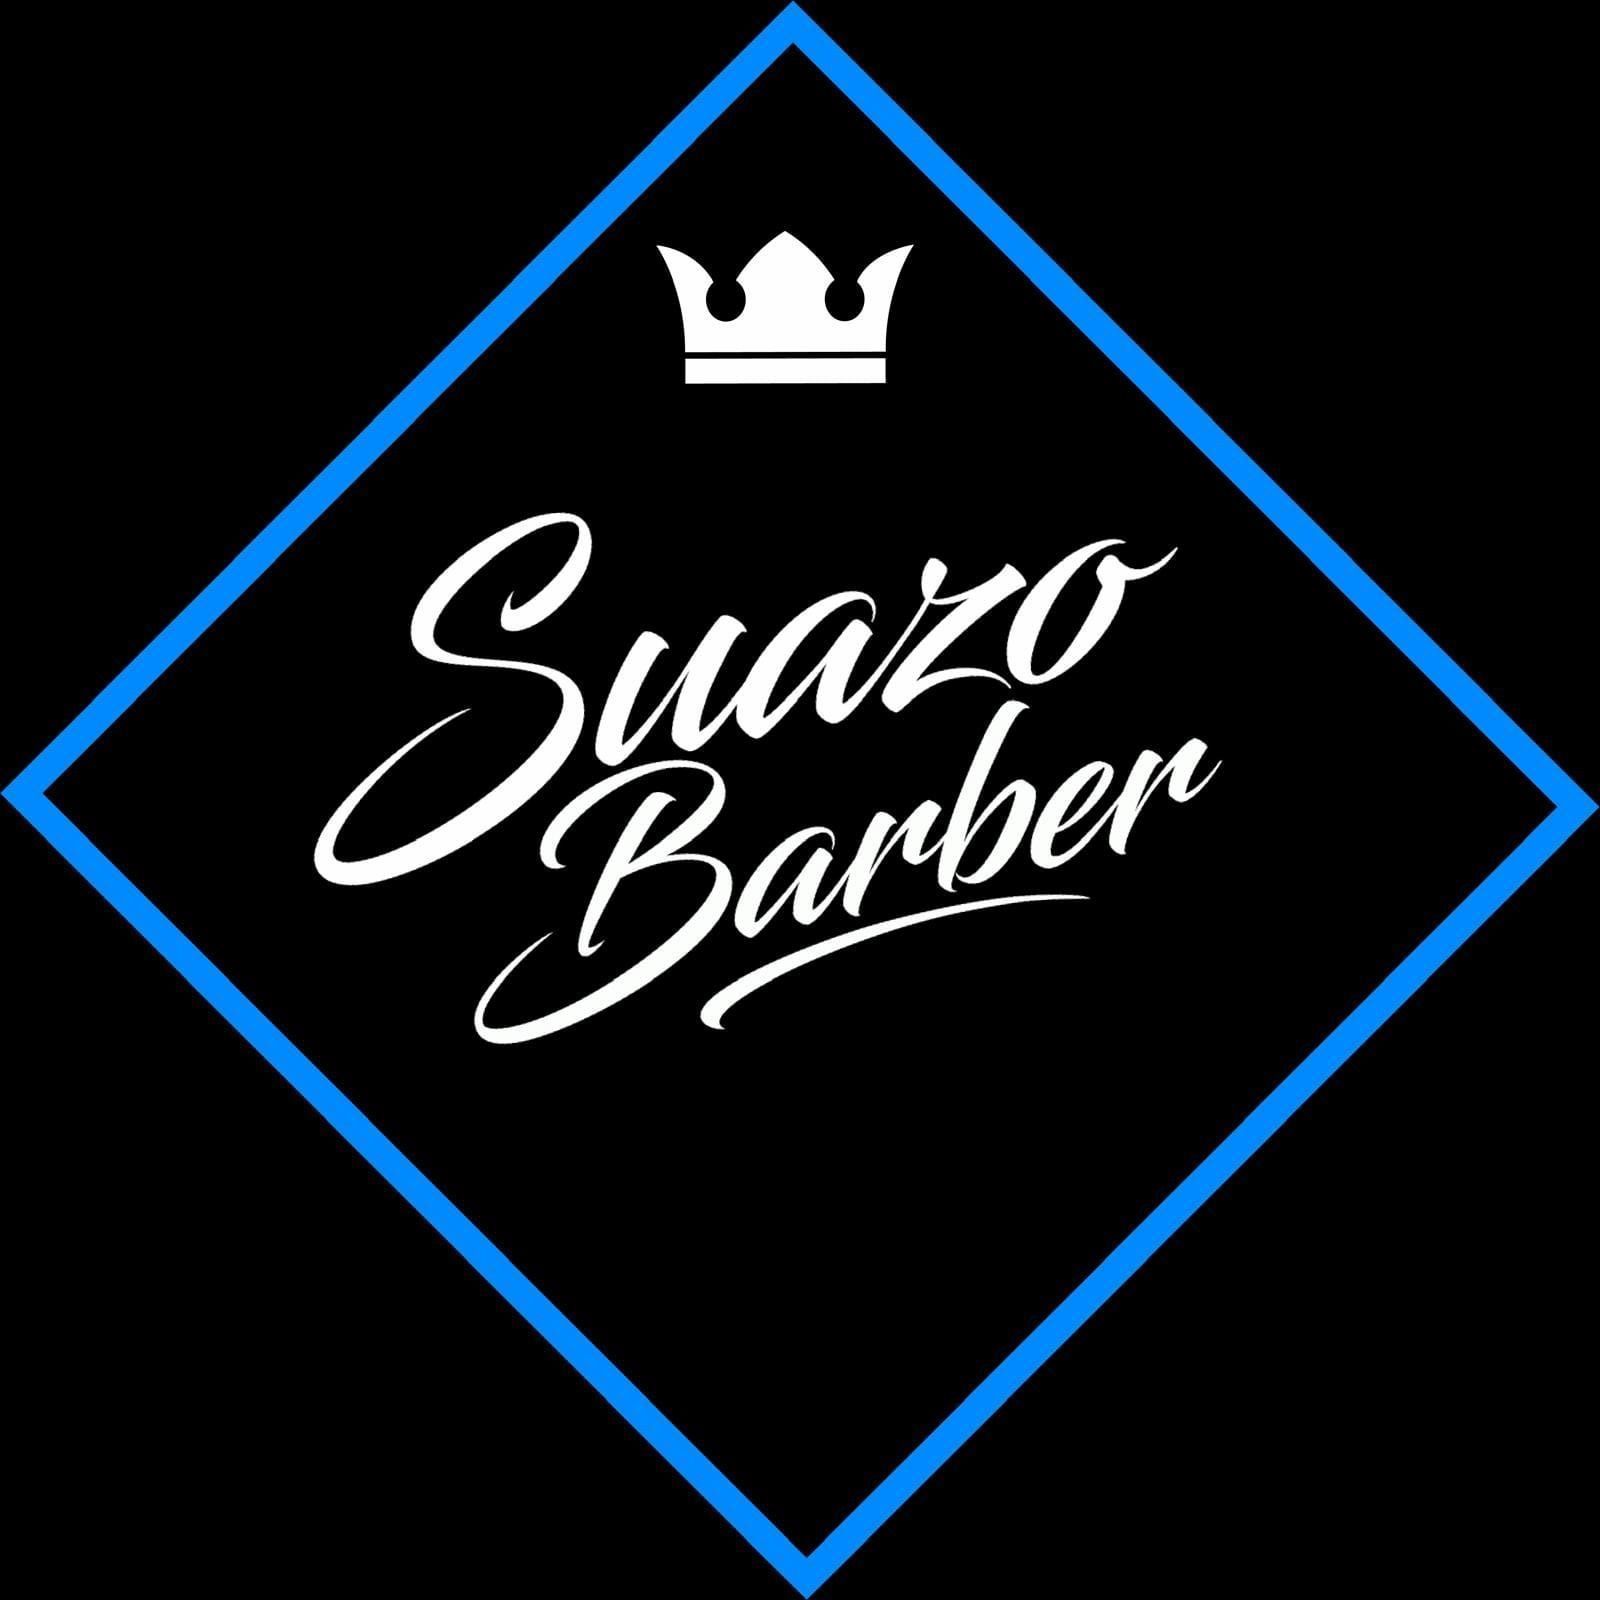 Suazo Barber, Carrer de Còrsega, 81, local 2c, 08029, Barcelona